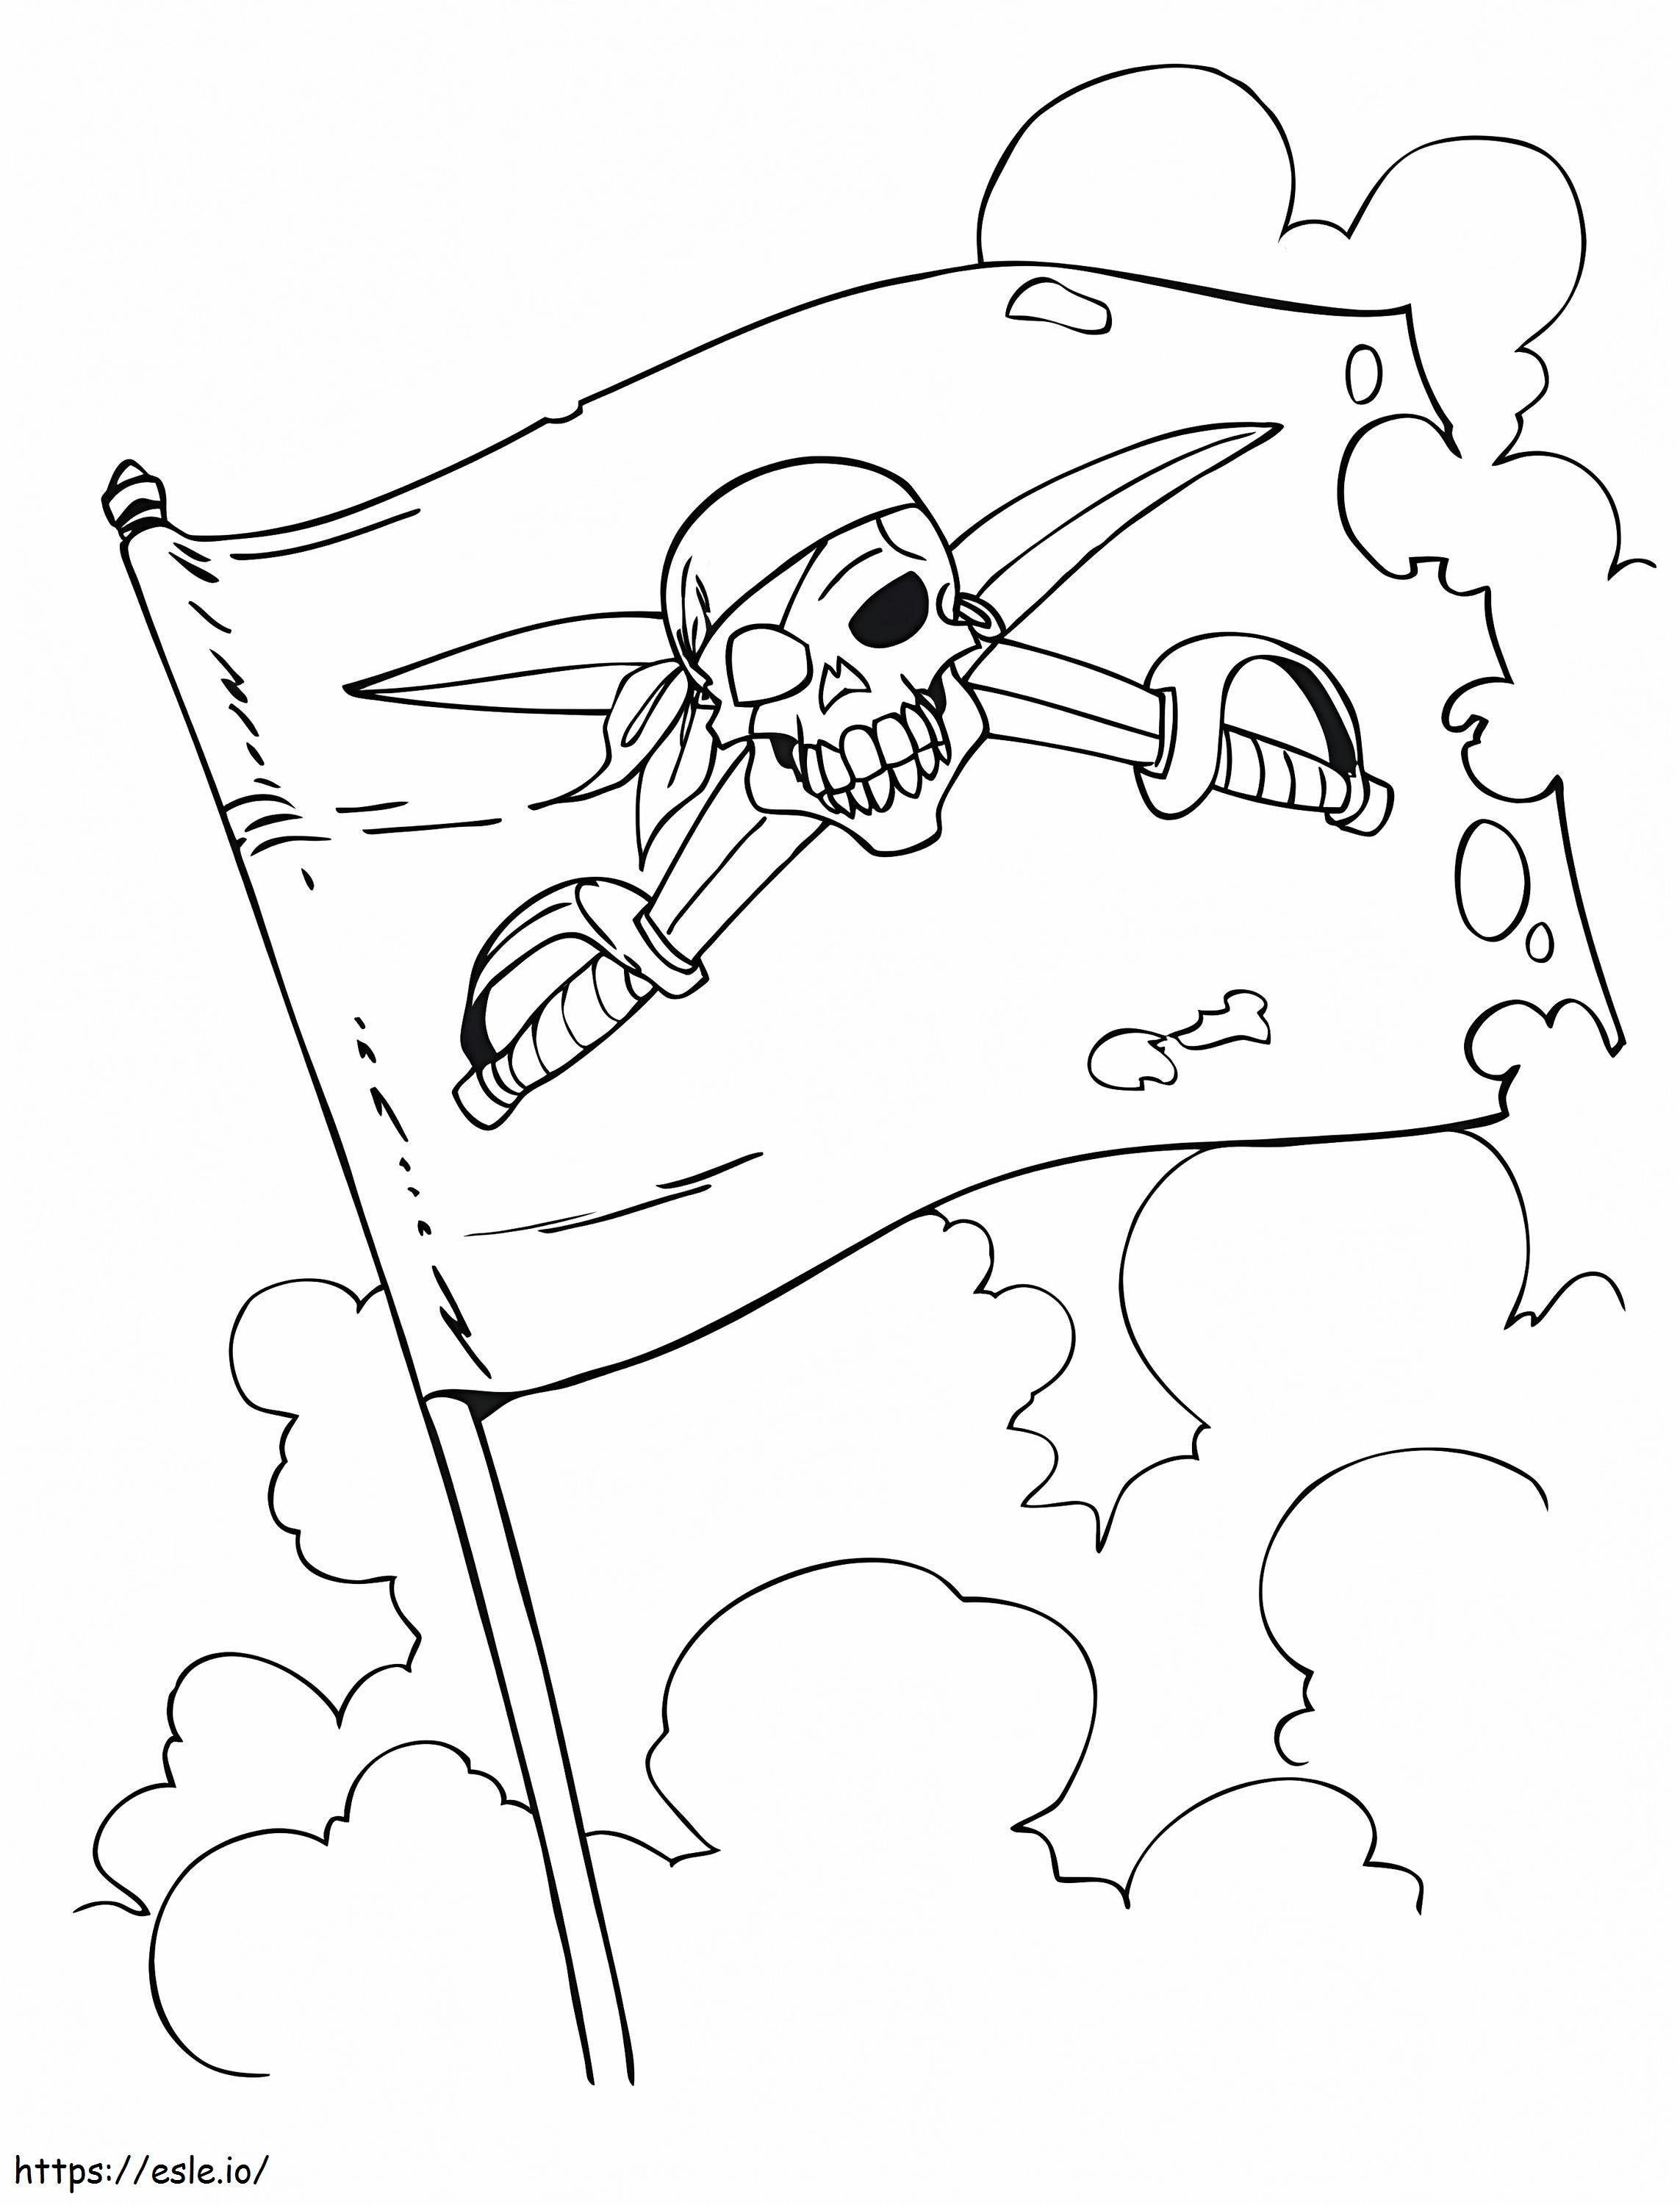 Una bandera pirata para colorear